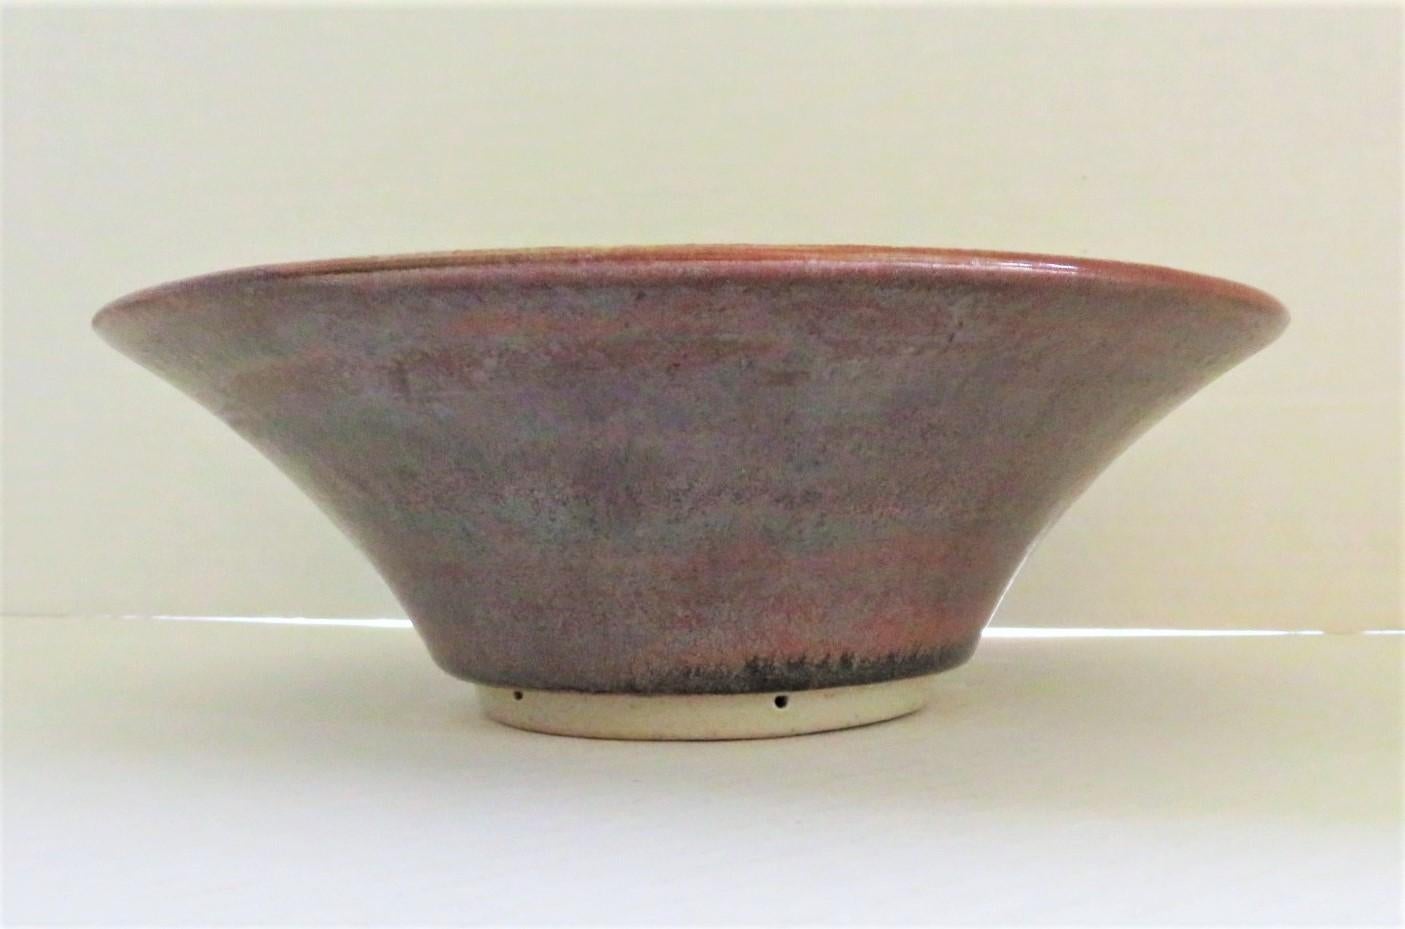 Glazed  Organic Scandinavian Modern Ceramic Bowl by Carl Harry Stålhane for Designhuset For Sale